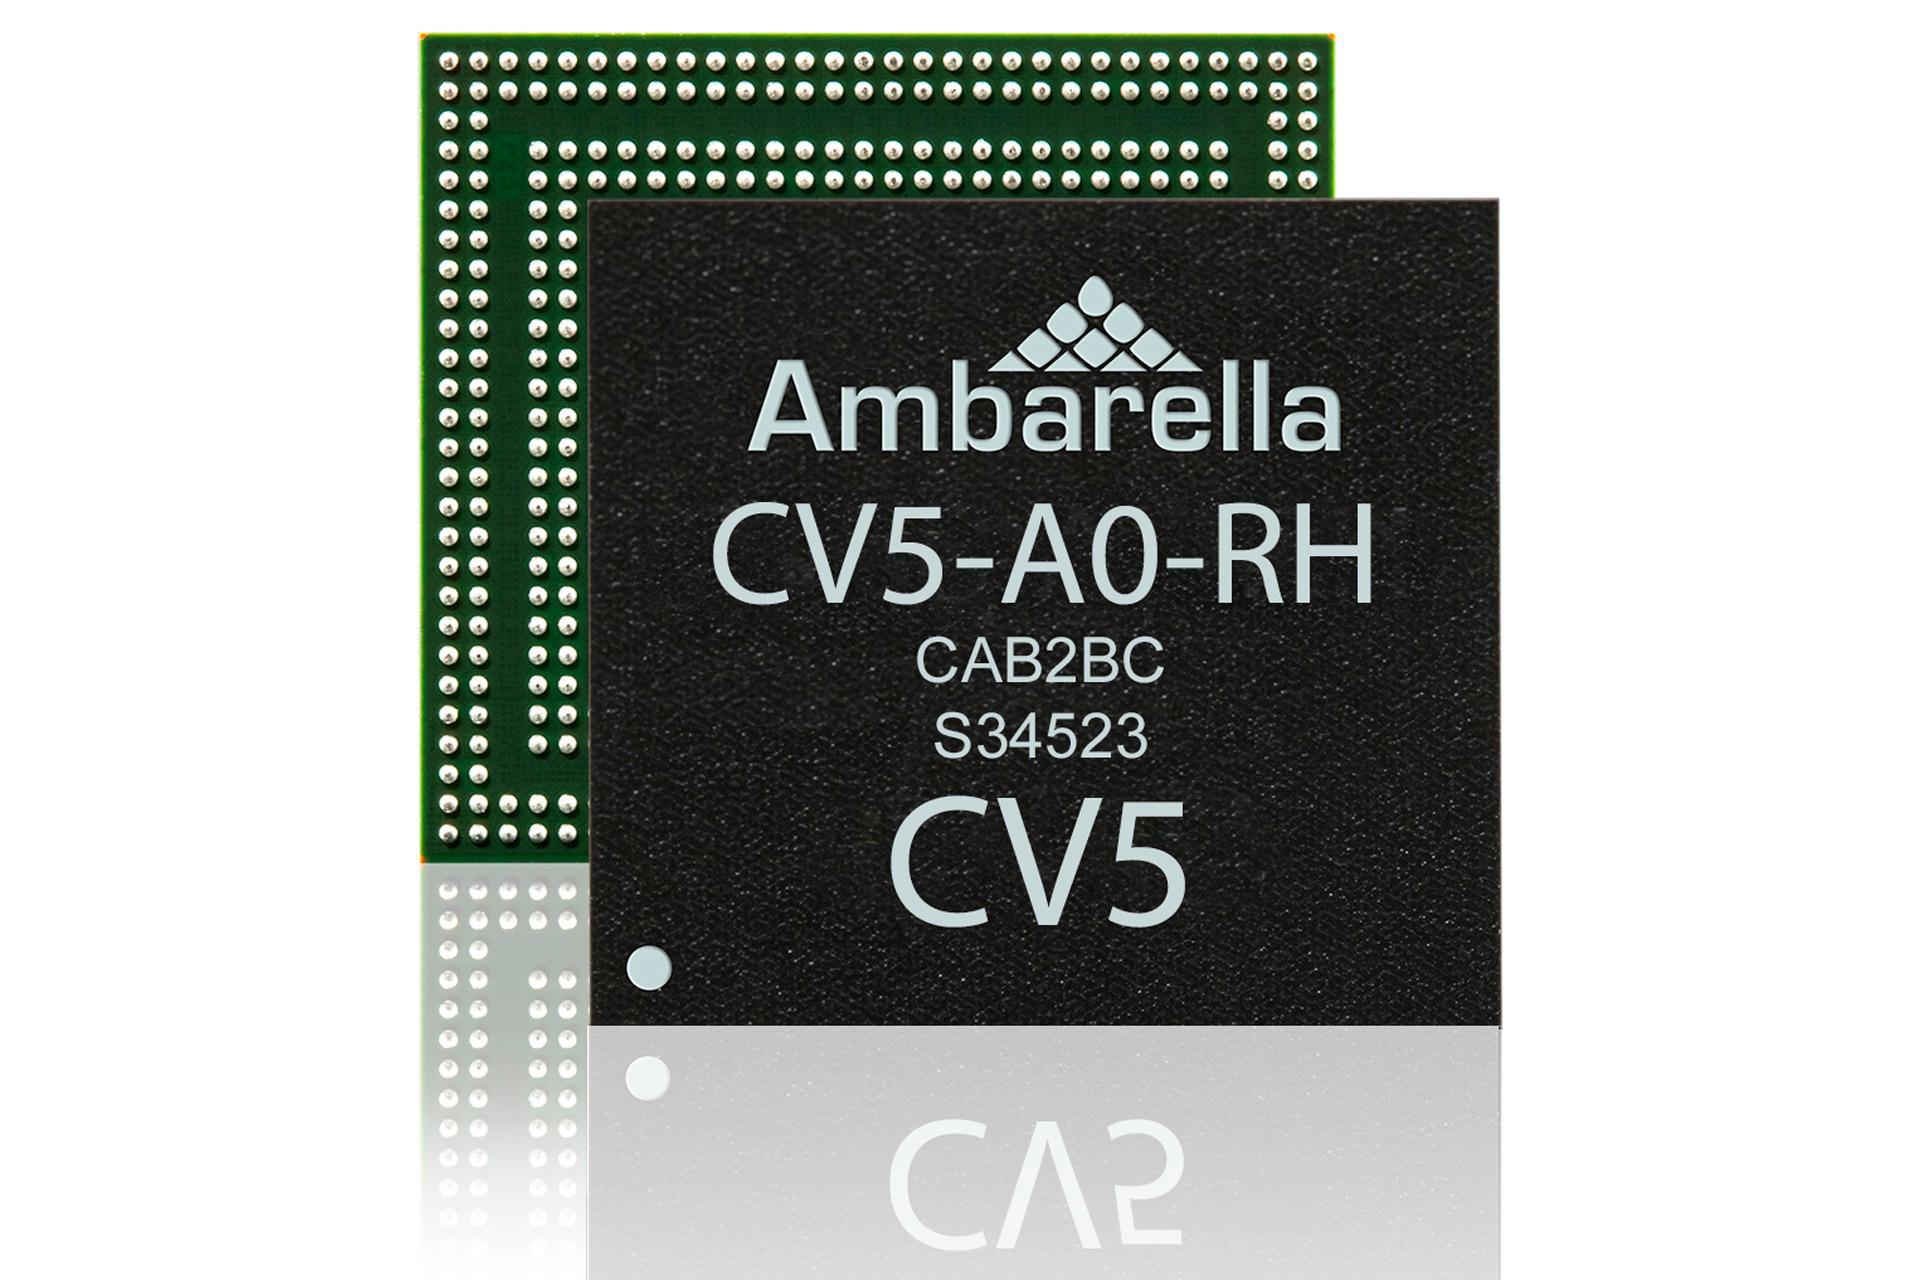 پردازنده CV5 آمبرلا، فیلمبرداری 8K را در پهپاد و اکشن کمرا ممکن می‌کند